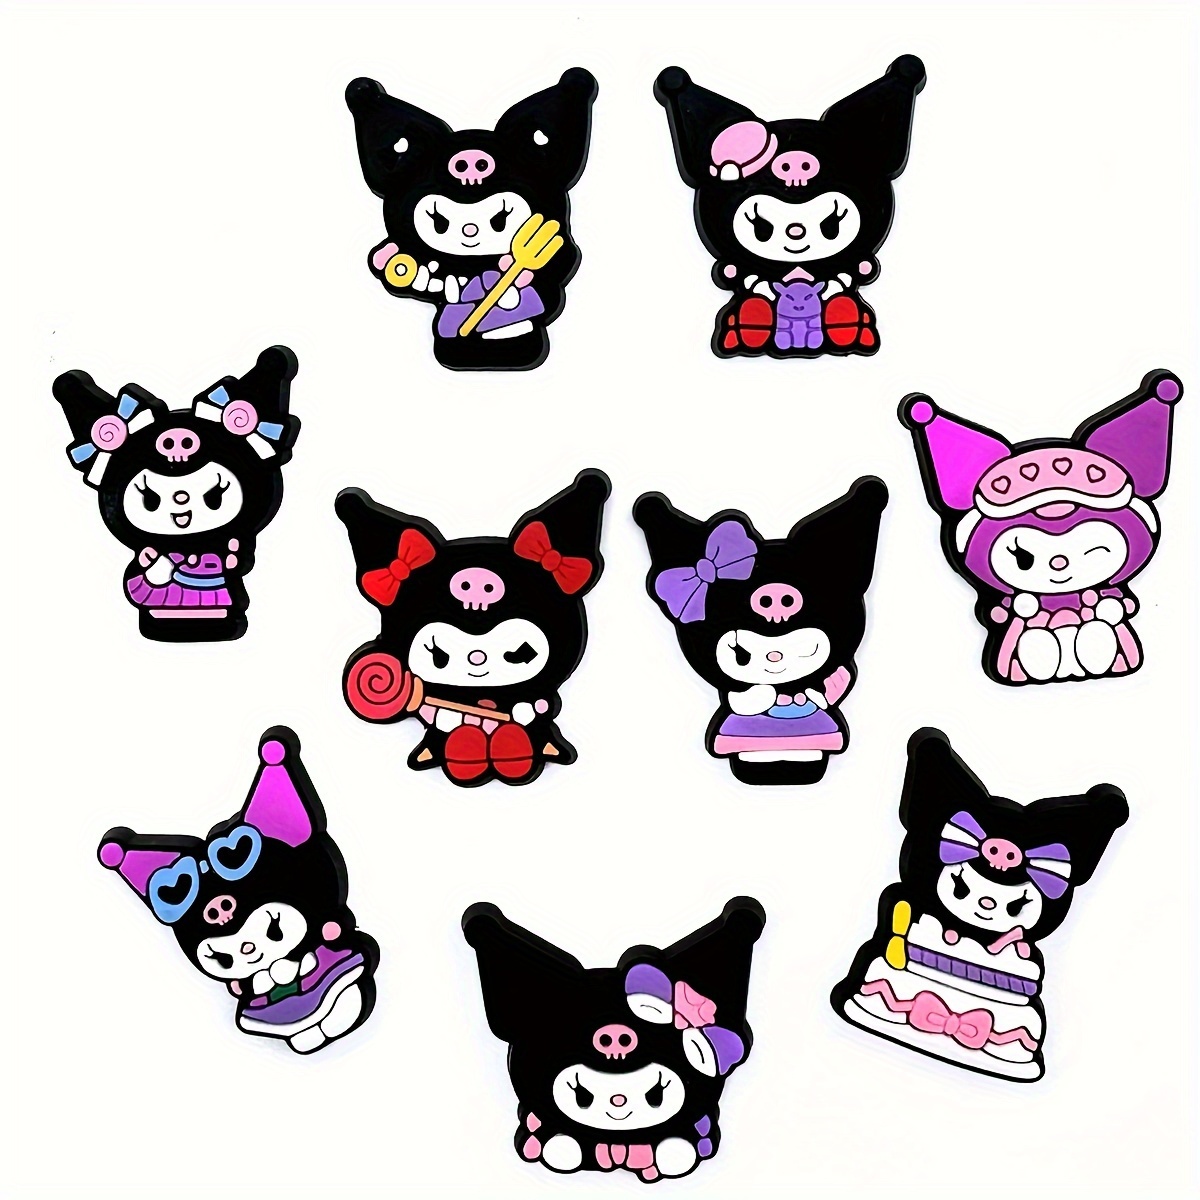 Cute Cartoon Cat Shoe Charms For Girls Kawaii Shoe - Temu